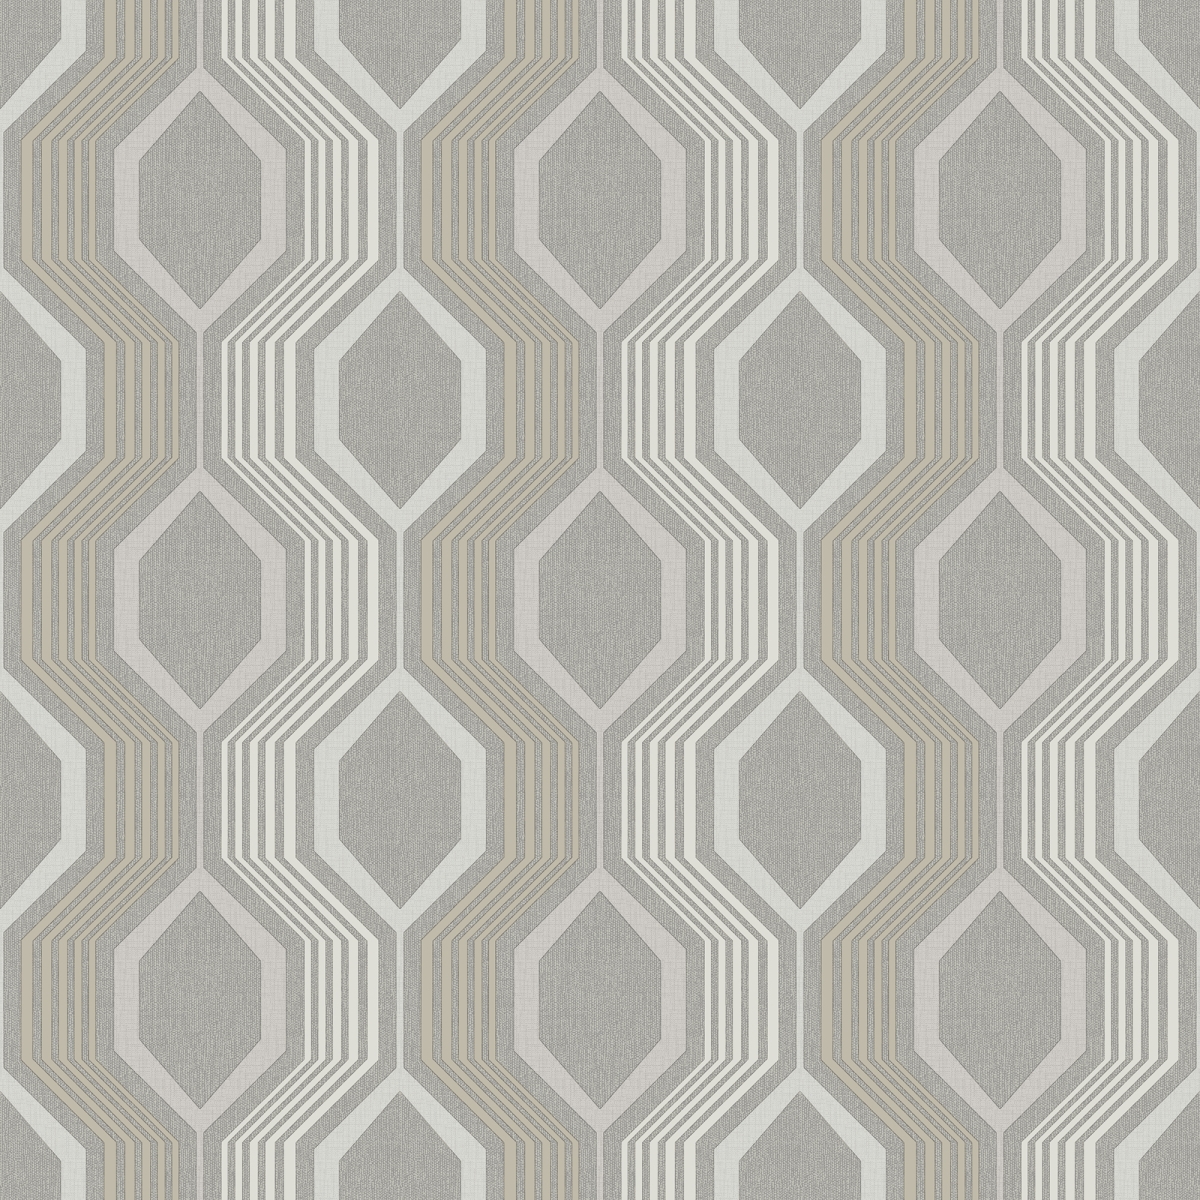 904907 Hexagon Non-woven Wallpaper, Grey